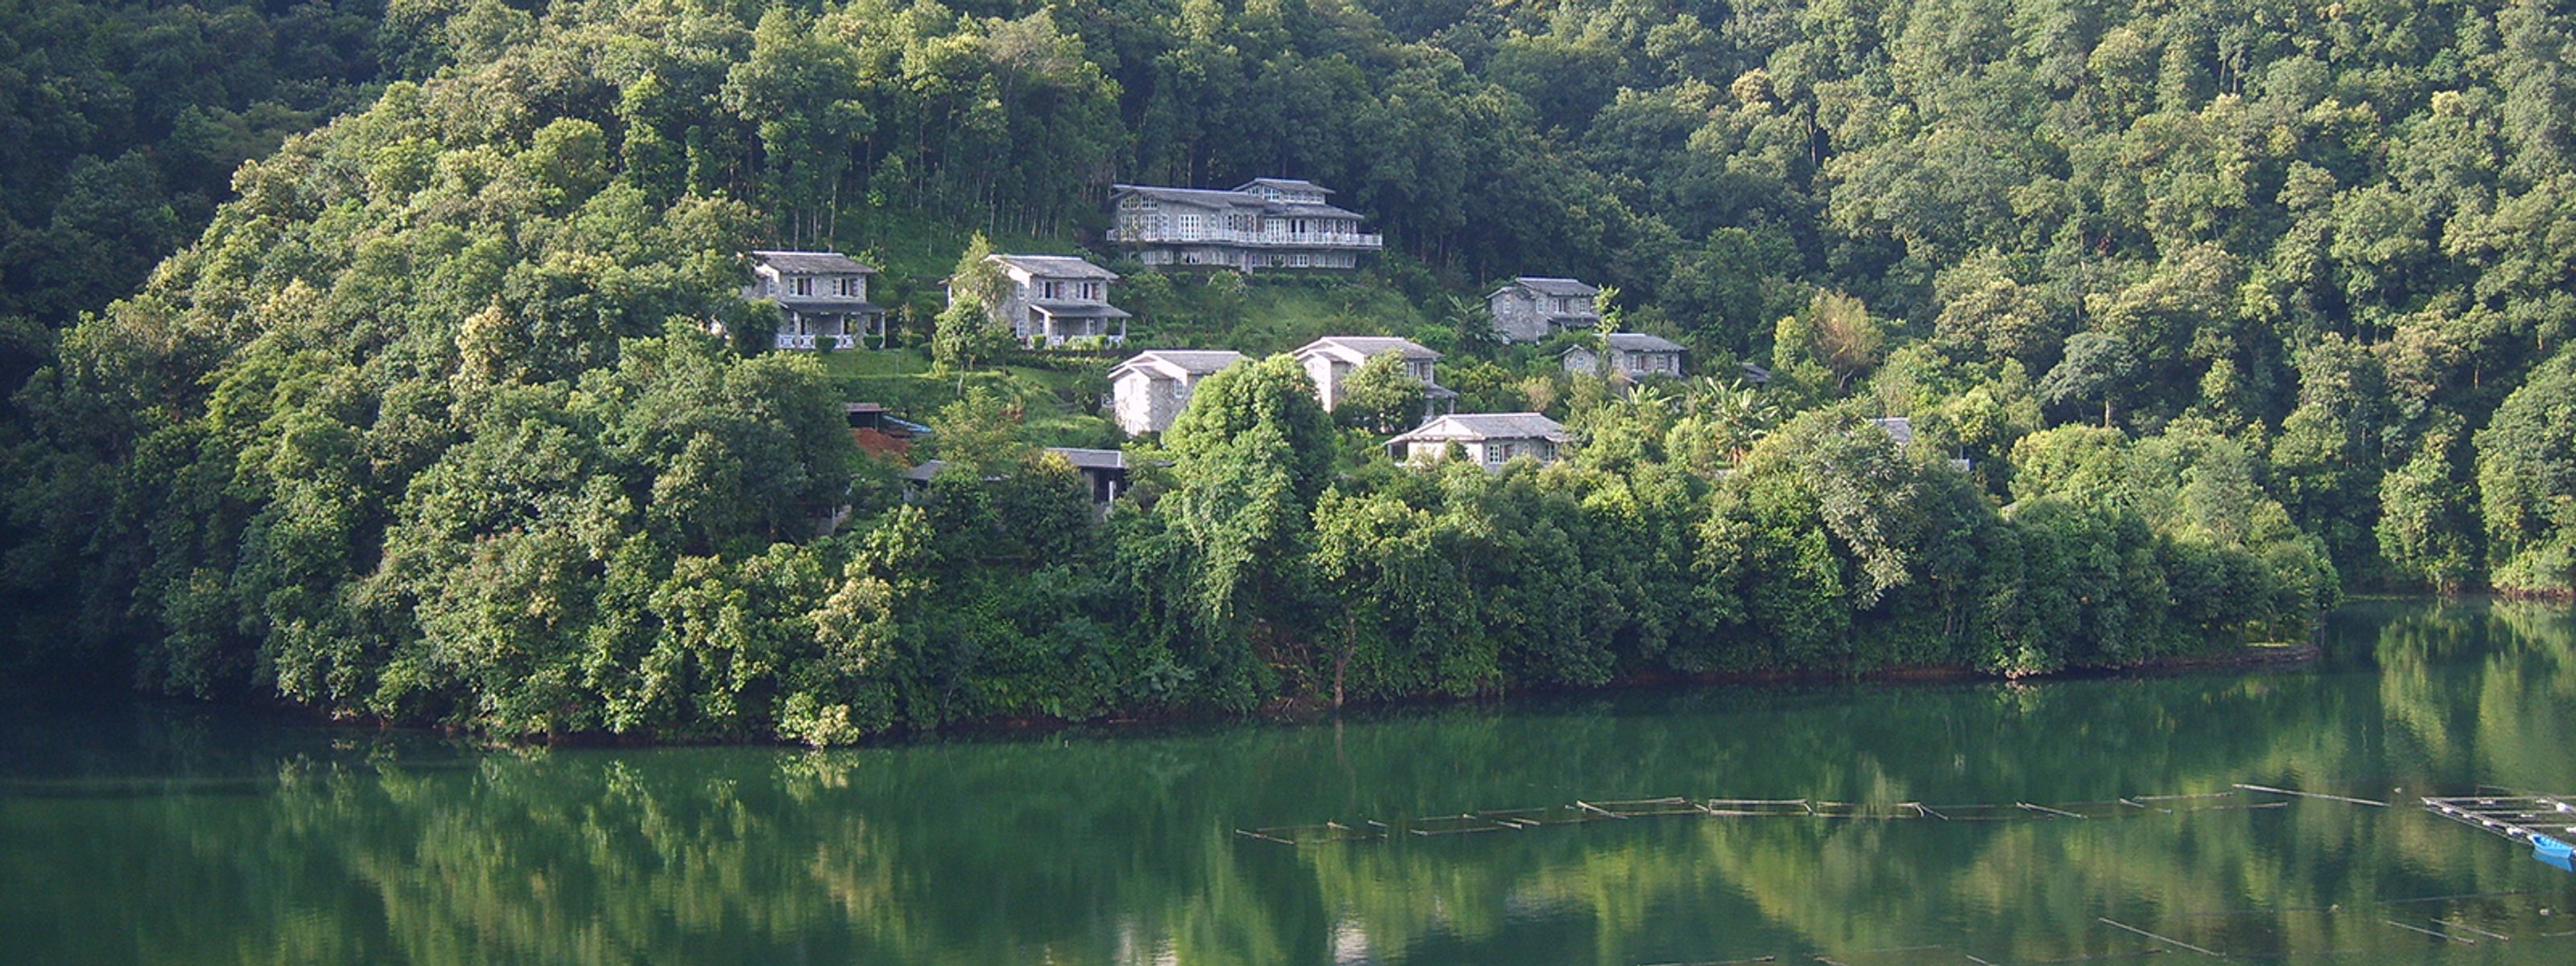 Begnas Lake Resort & Villas vom See aus betrachtet